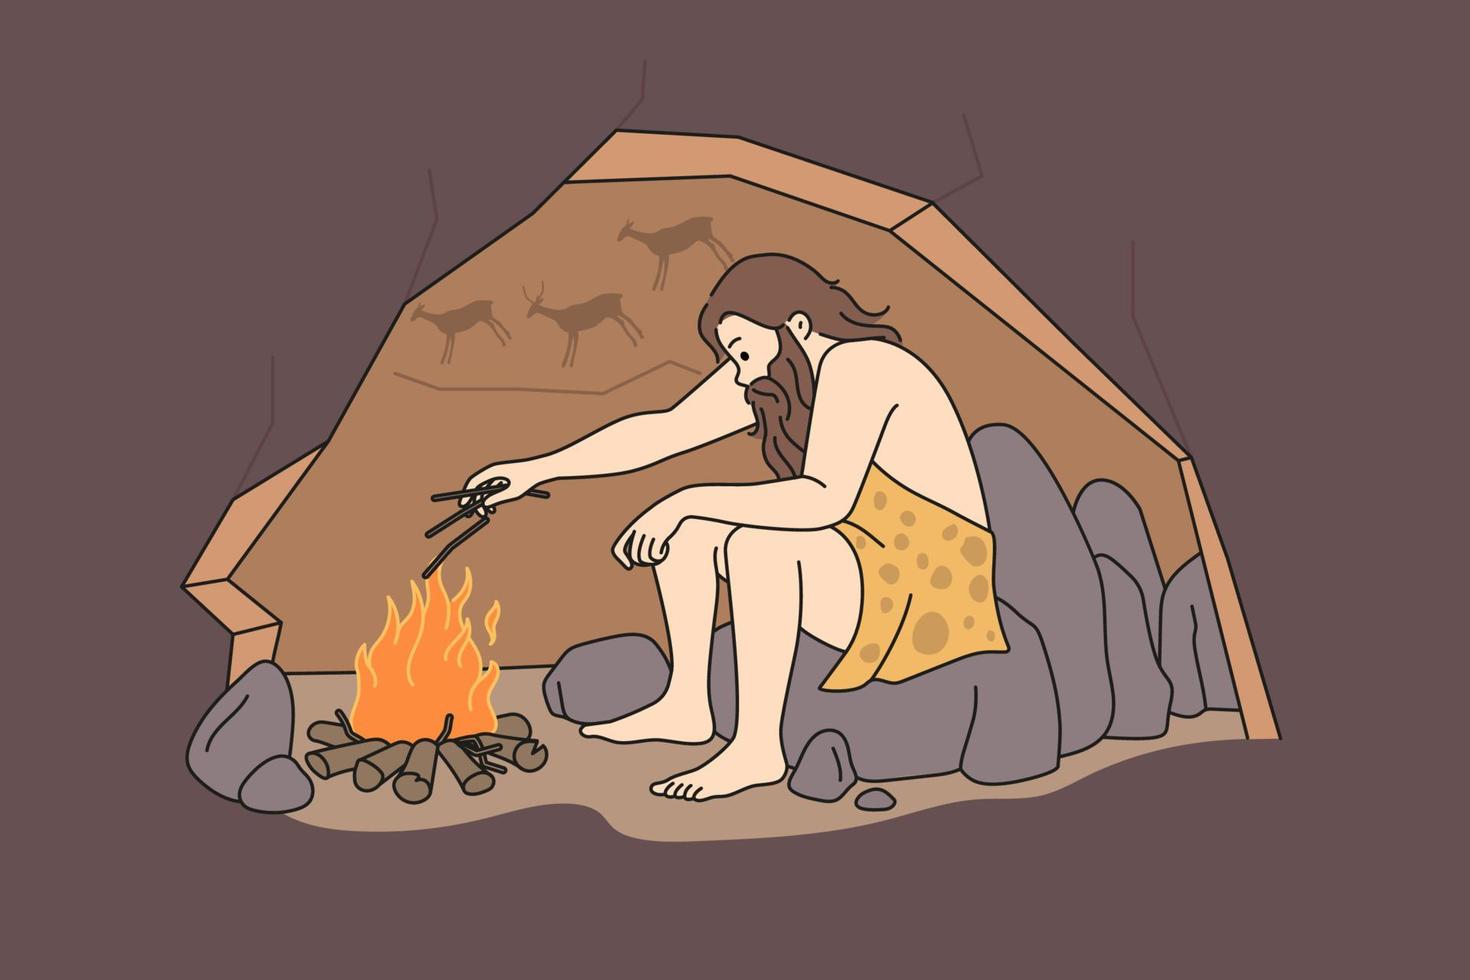 caveman Sammanträde i grotta nära bål uppvärmning. manlig förhistorisk person framställning brand under gammal åldrar. vektor illustration.